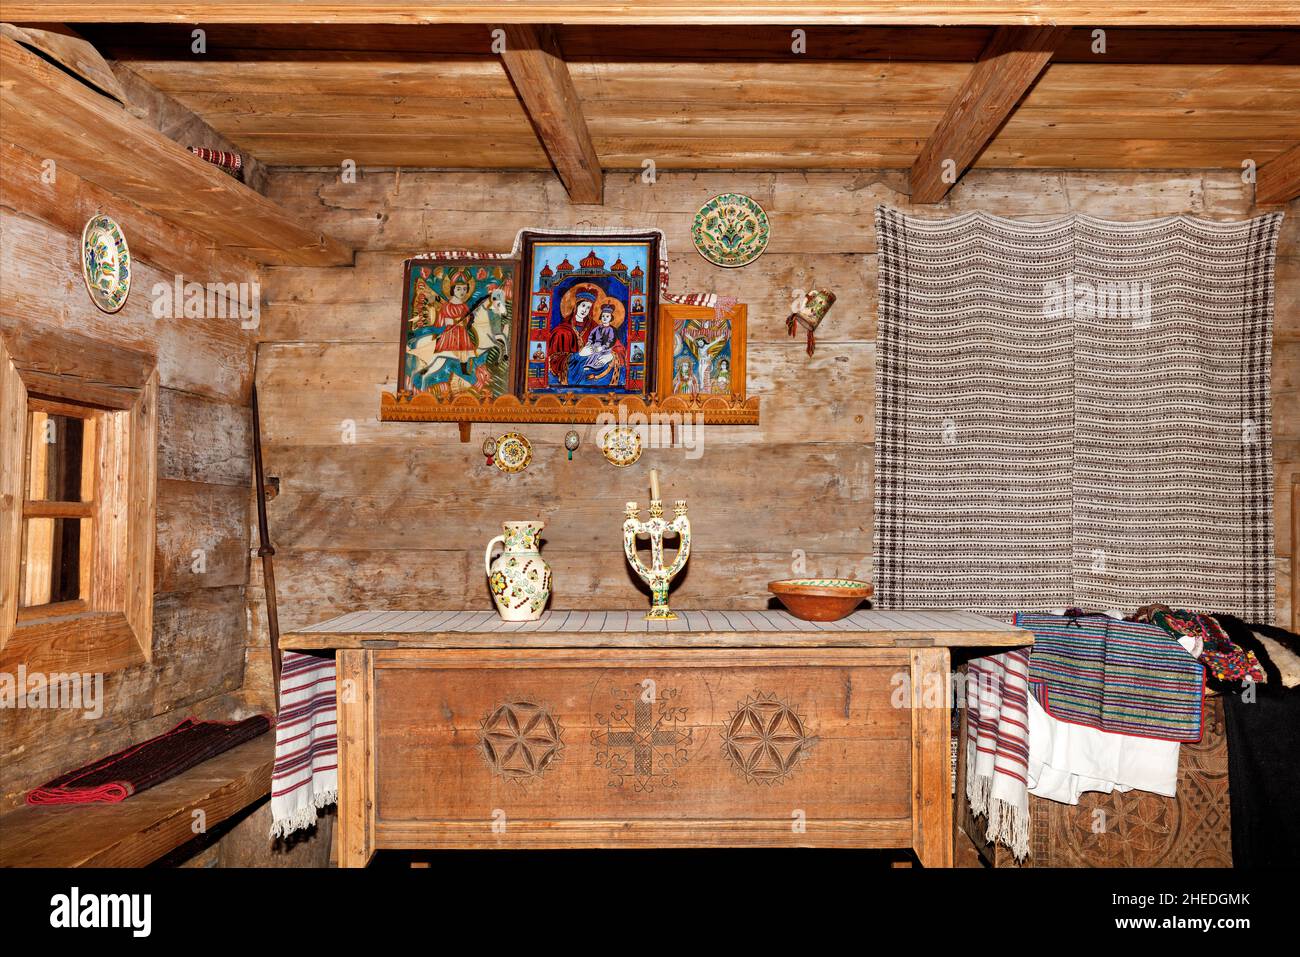 Das Innere des Wohnzimmers einer alten ukrainischen ländlichen Hütte mit heiligen Bildern über einem geschnitzten Esstisch und bestickten Leinentüchern. Stockfoto